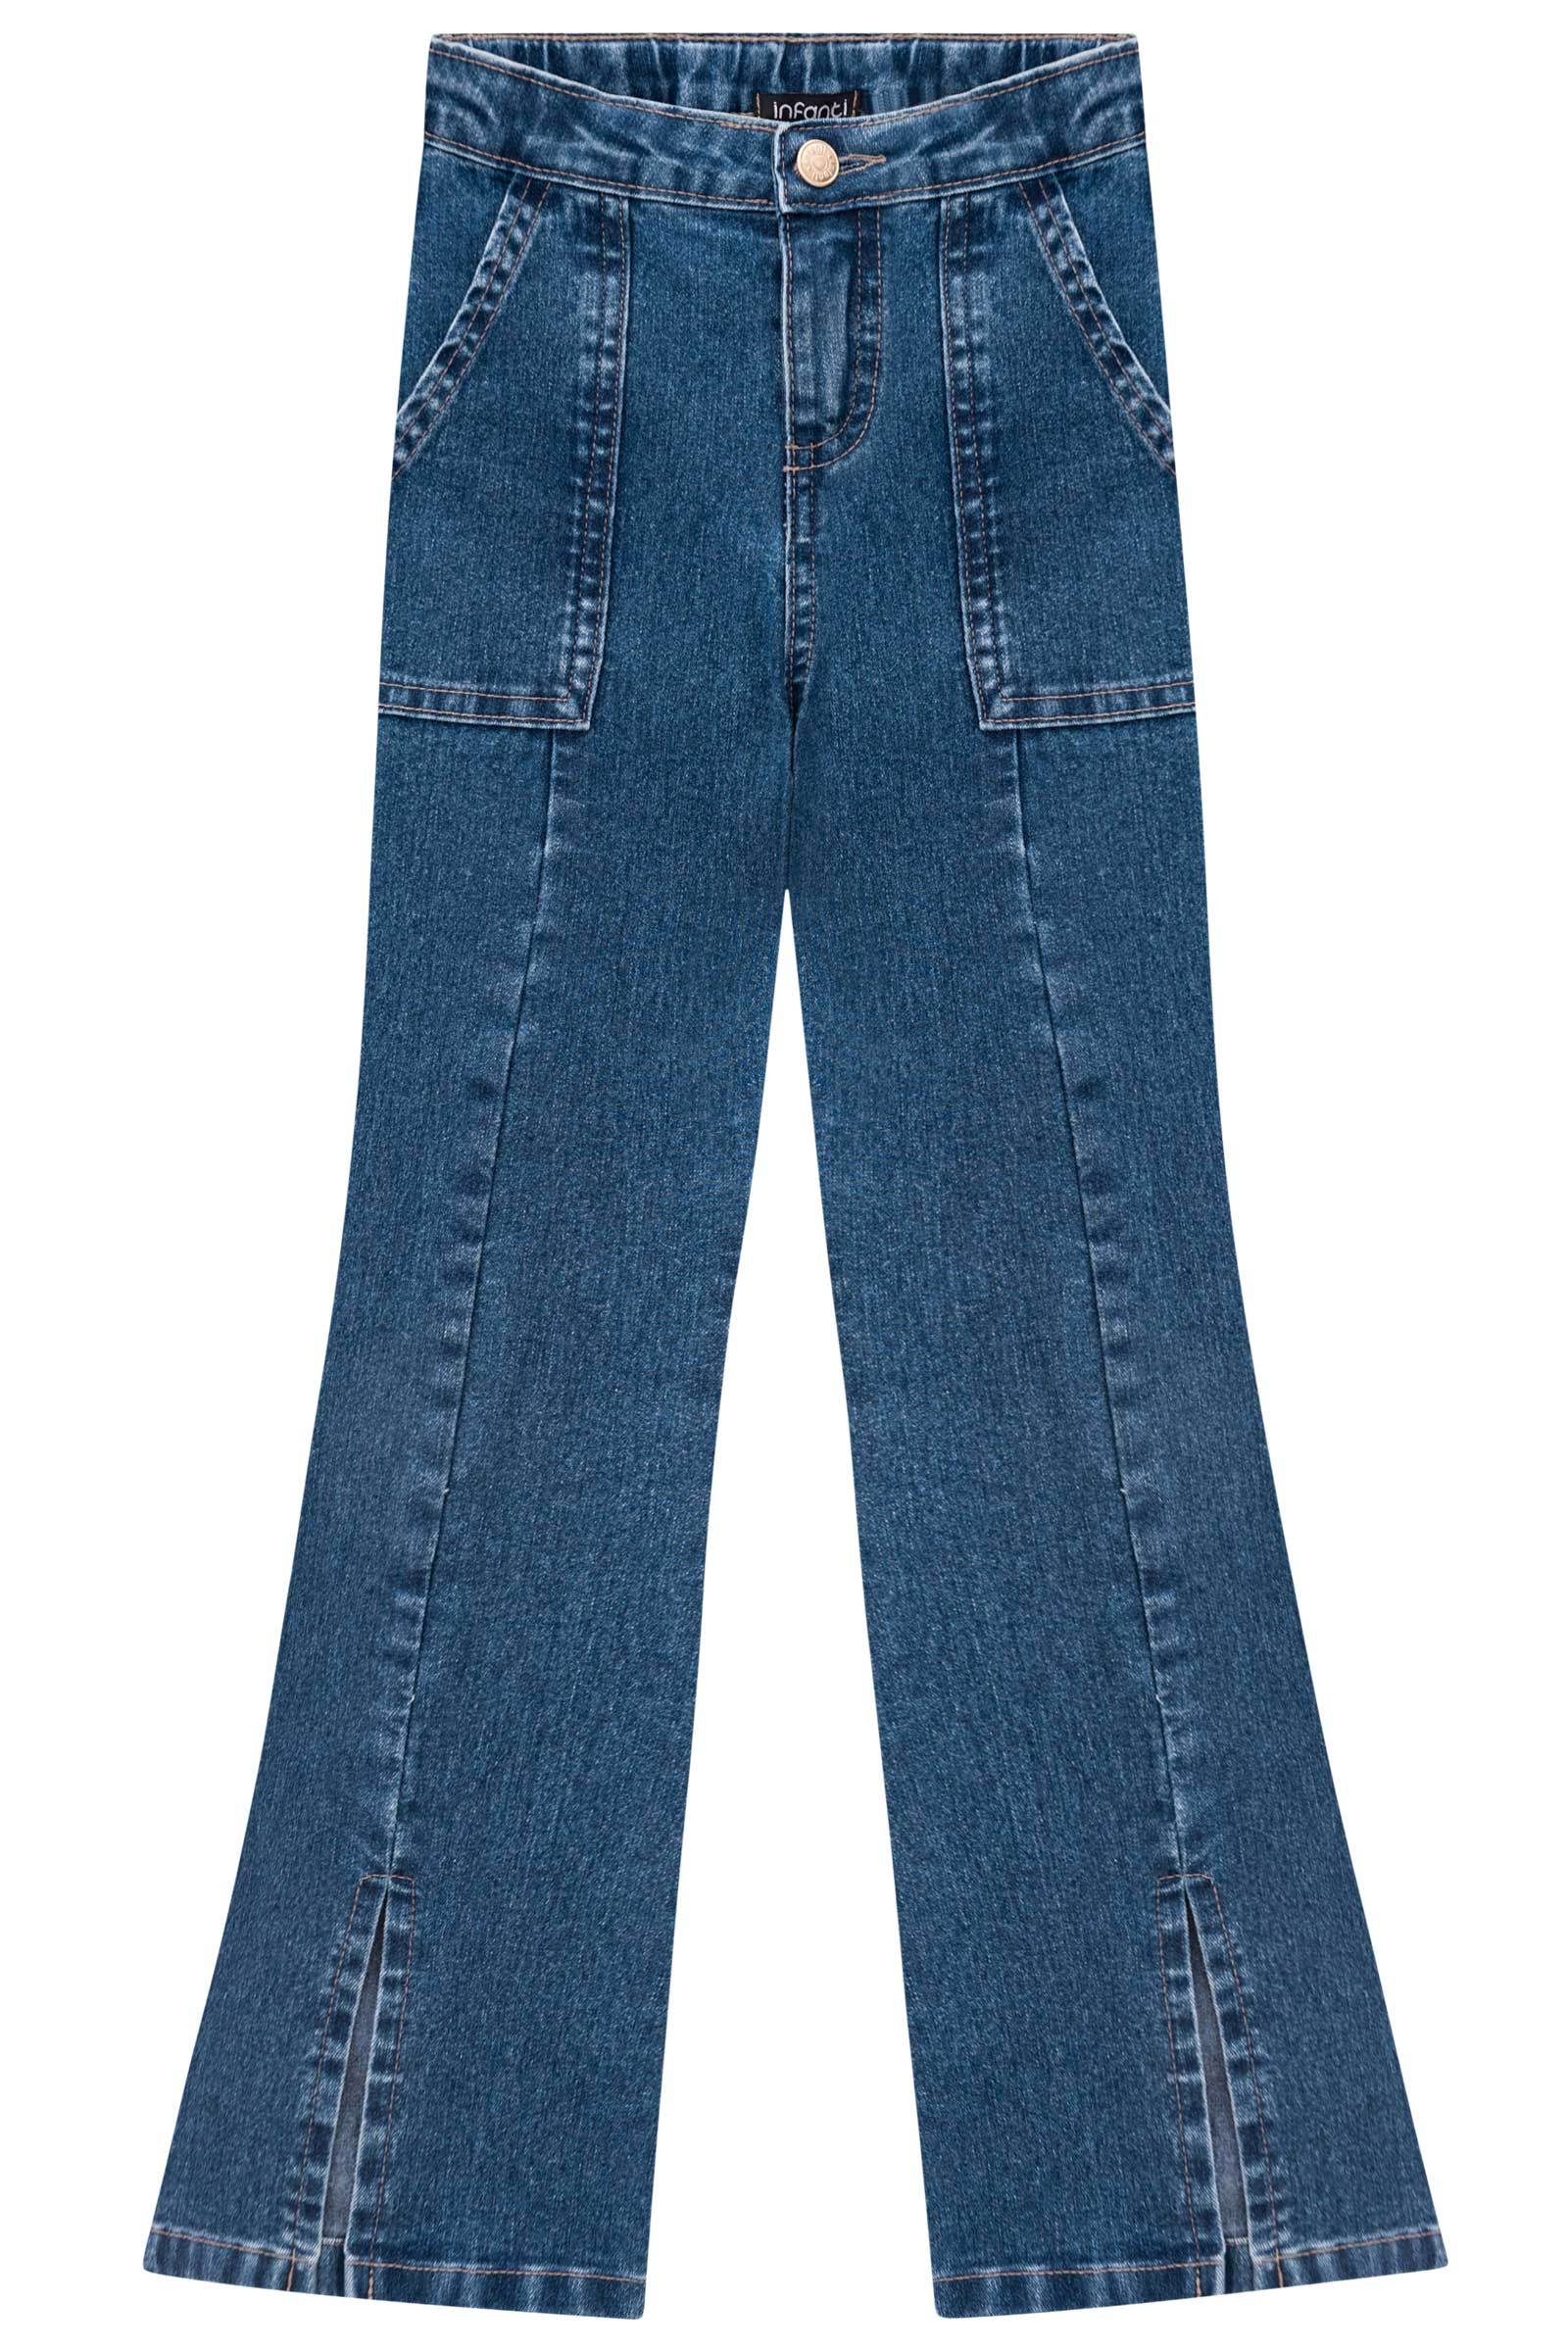 Calça Flare em Jeans Belline com Elastano 71773 Infanti